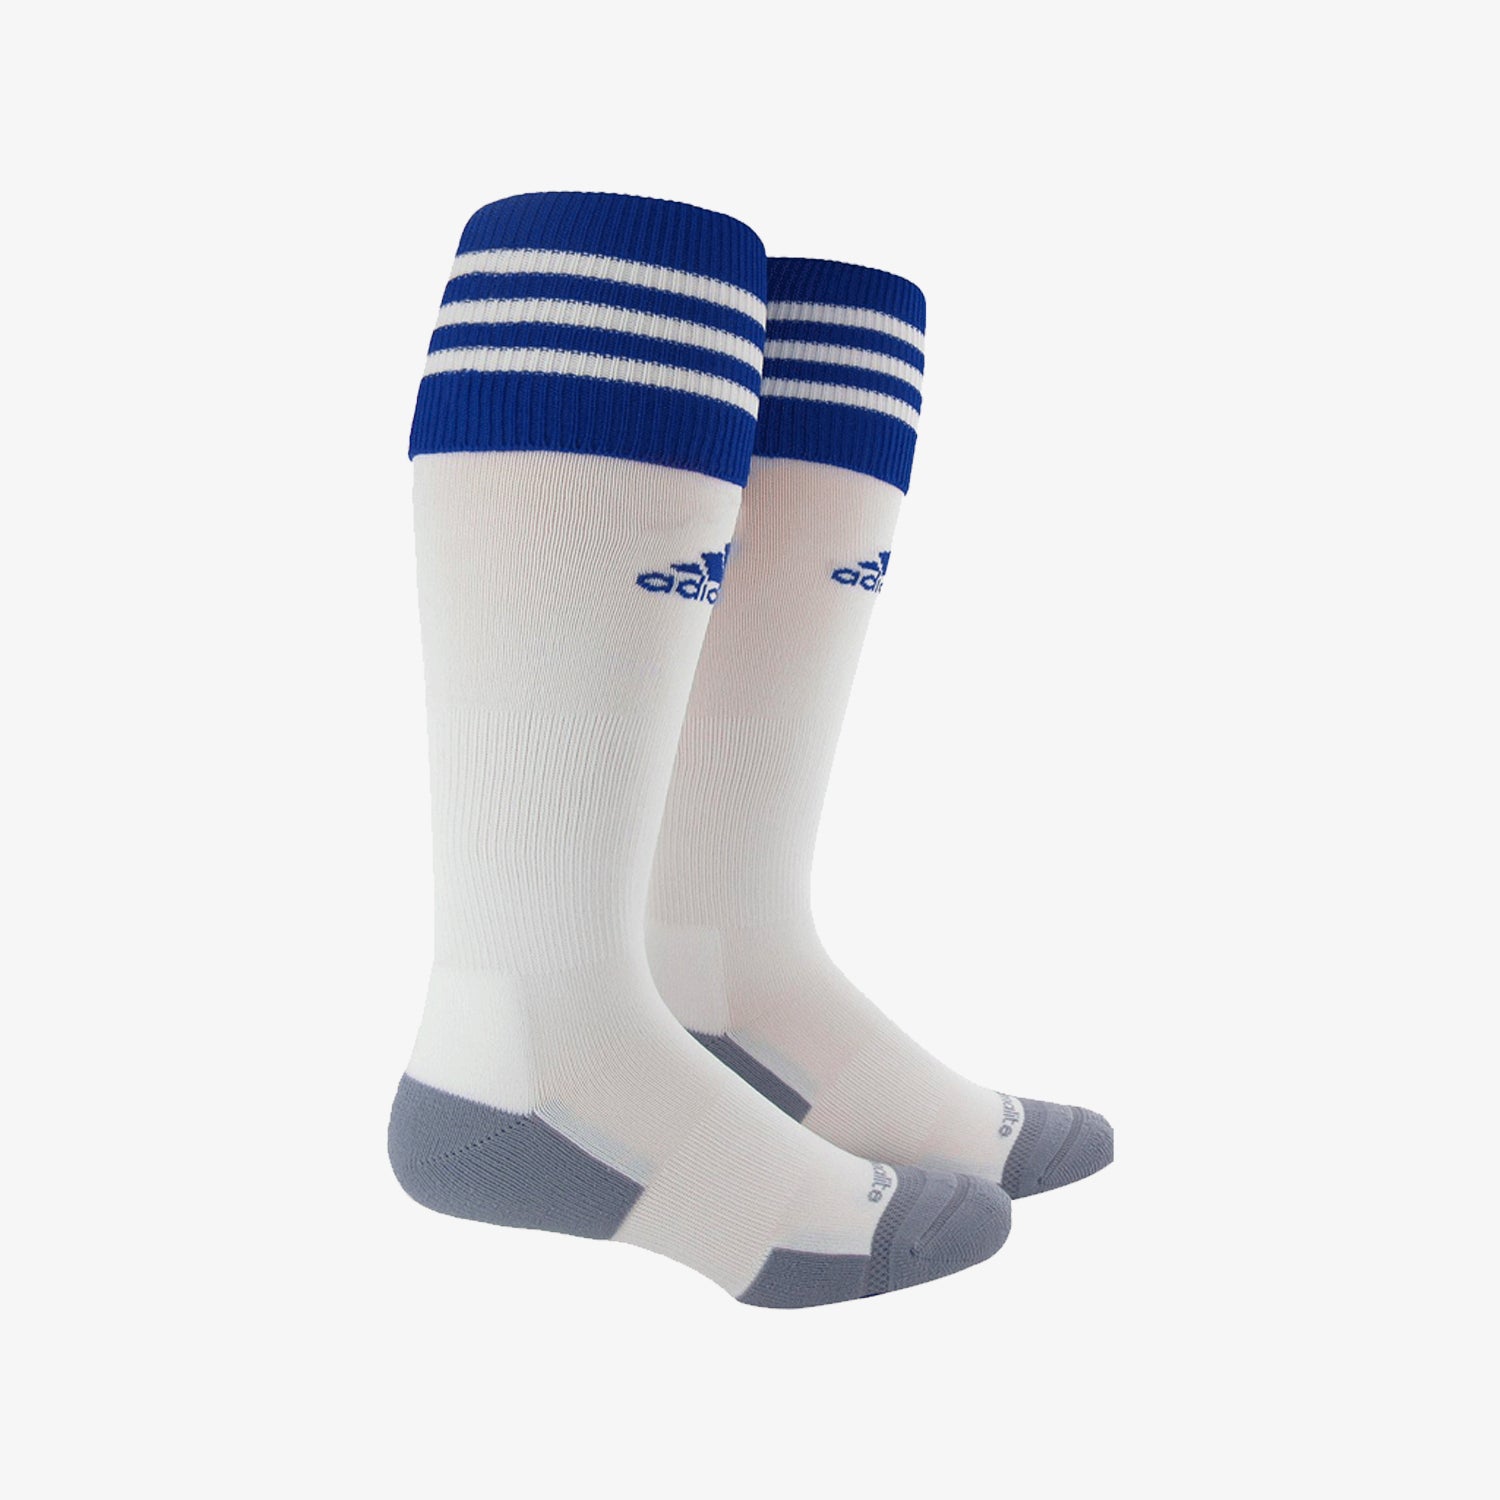 Copa Zone Cushion 2.0 Soccer Socks Medium - White/Royal